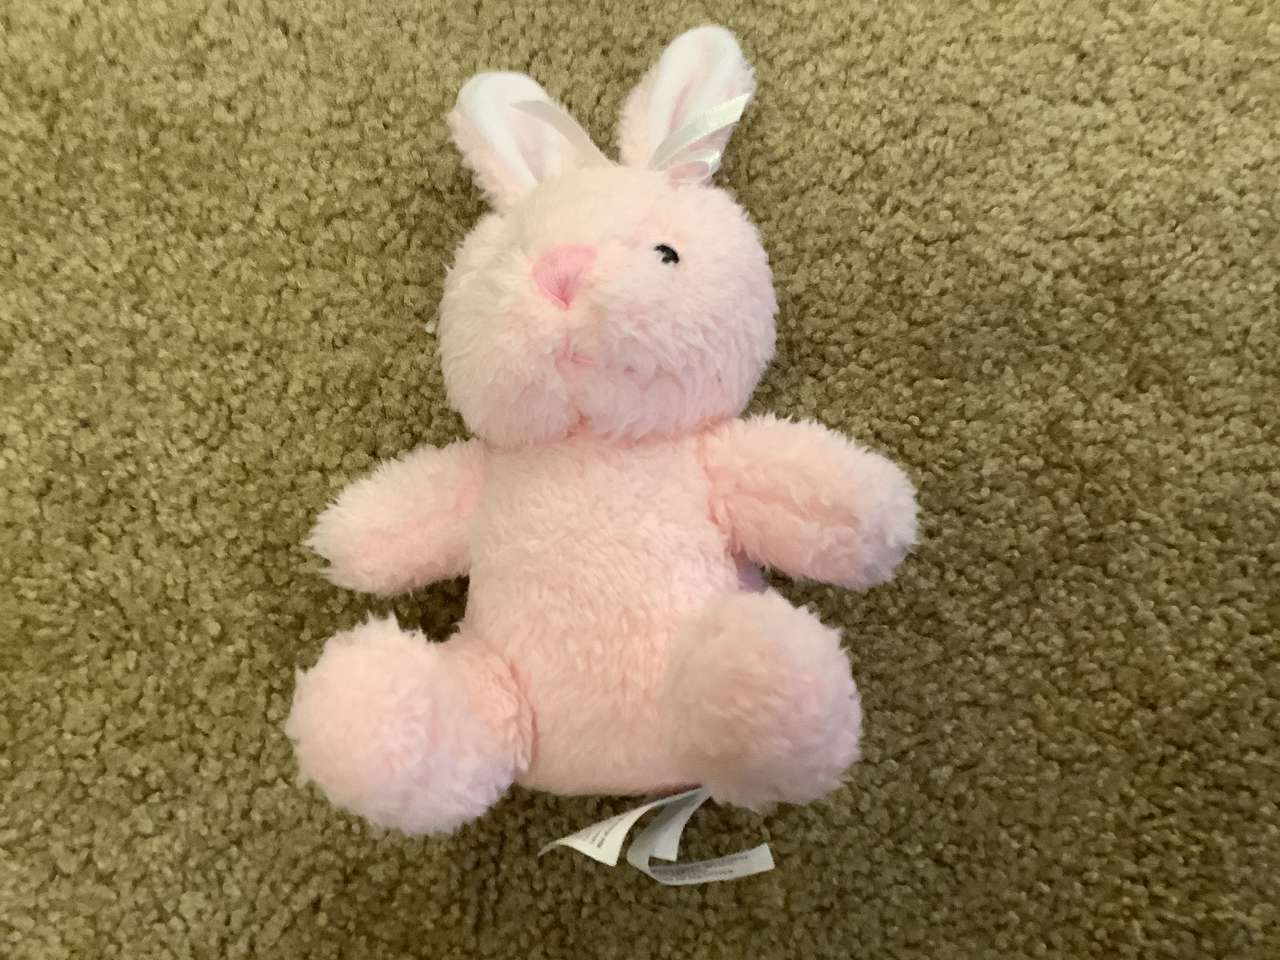 Zabawka króliczek puzzle online ze zdjęcia